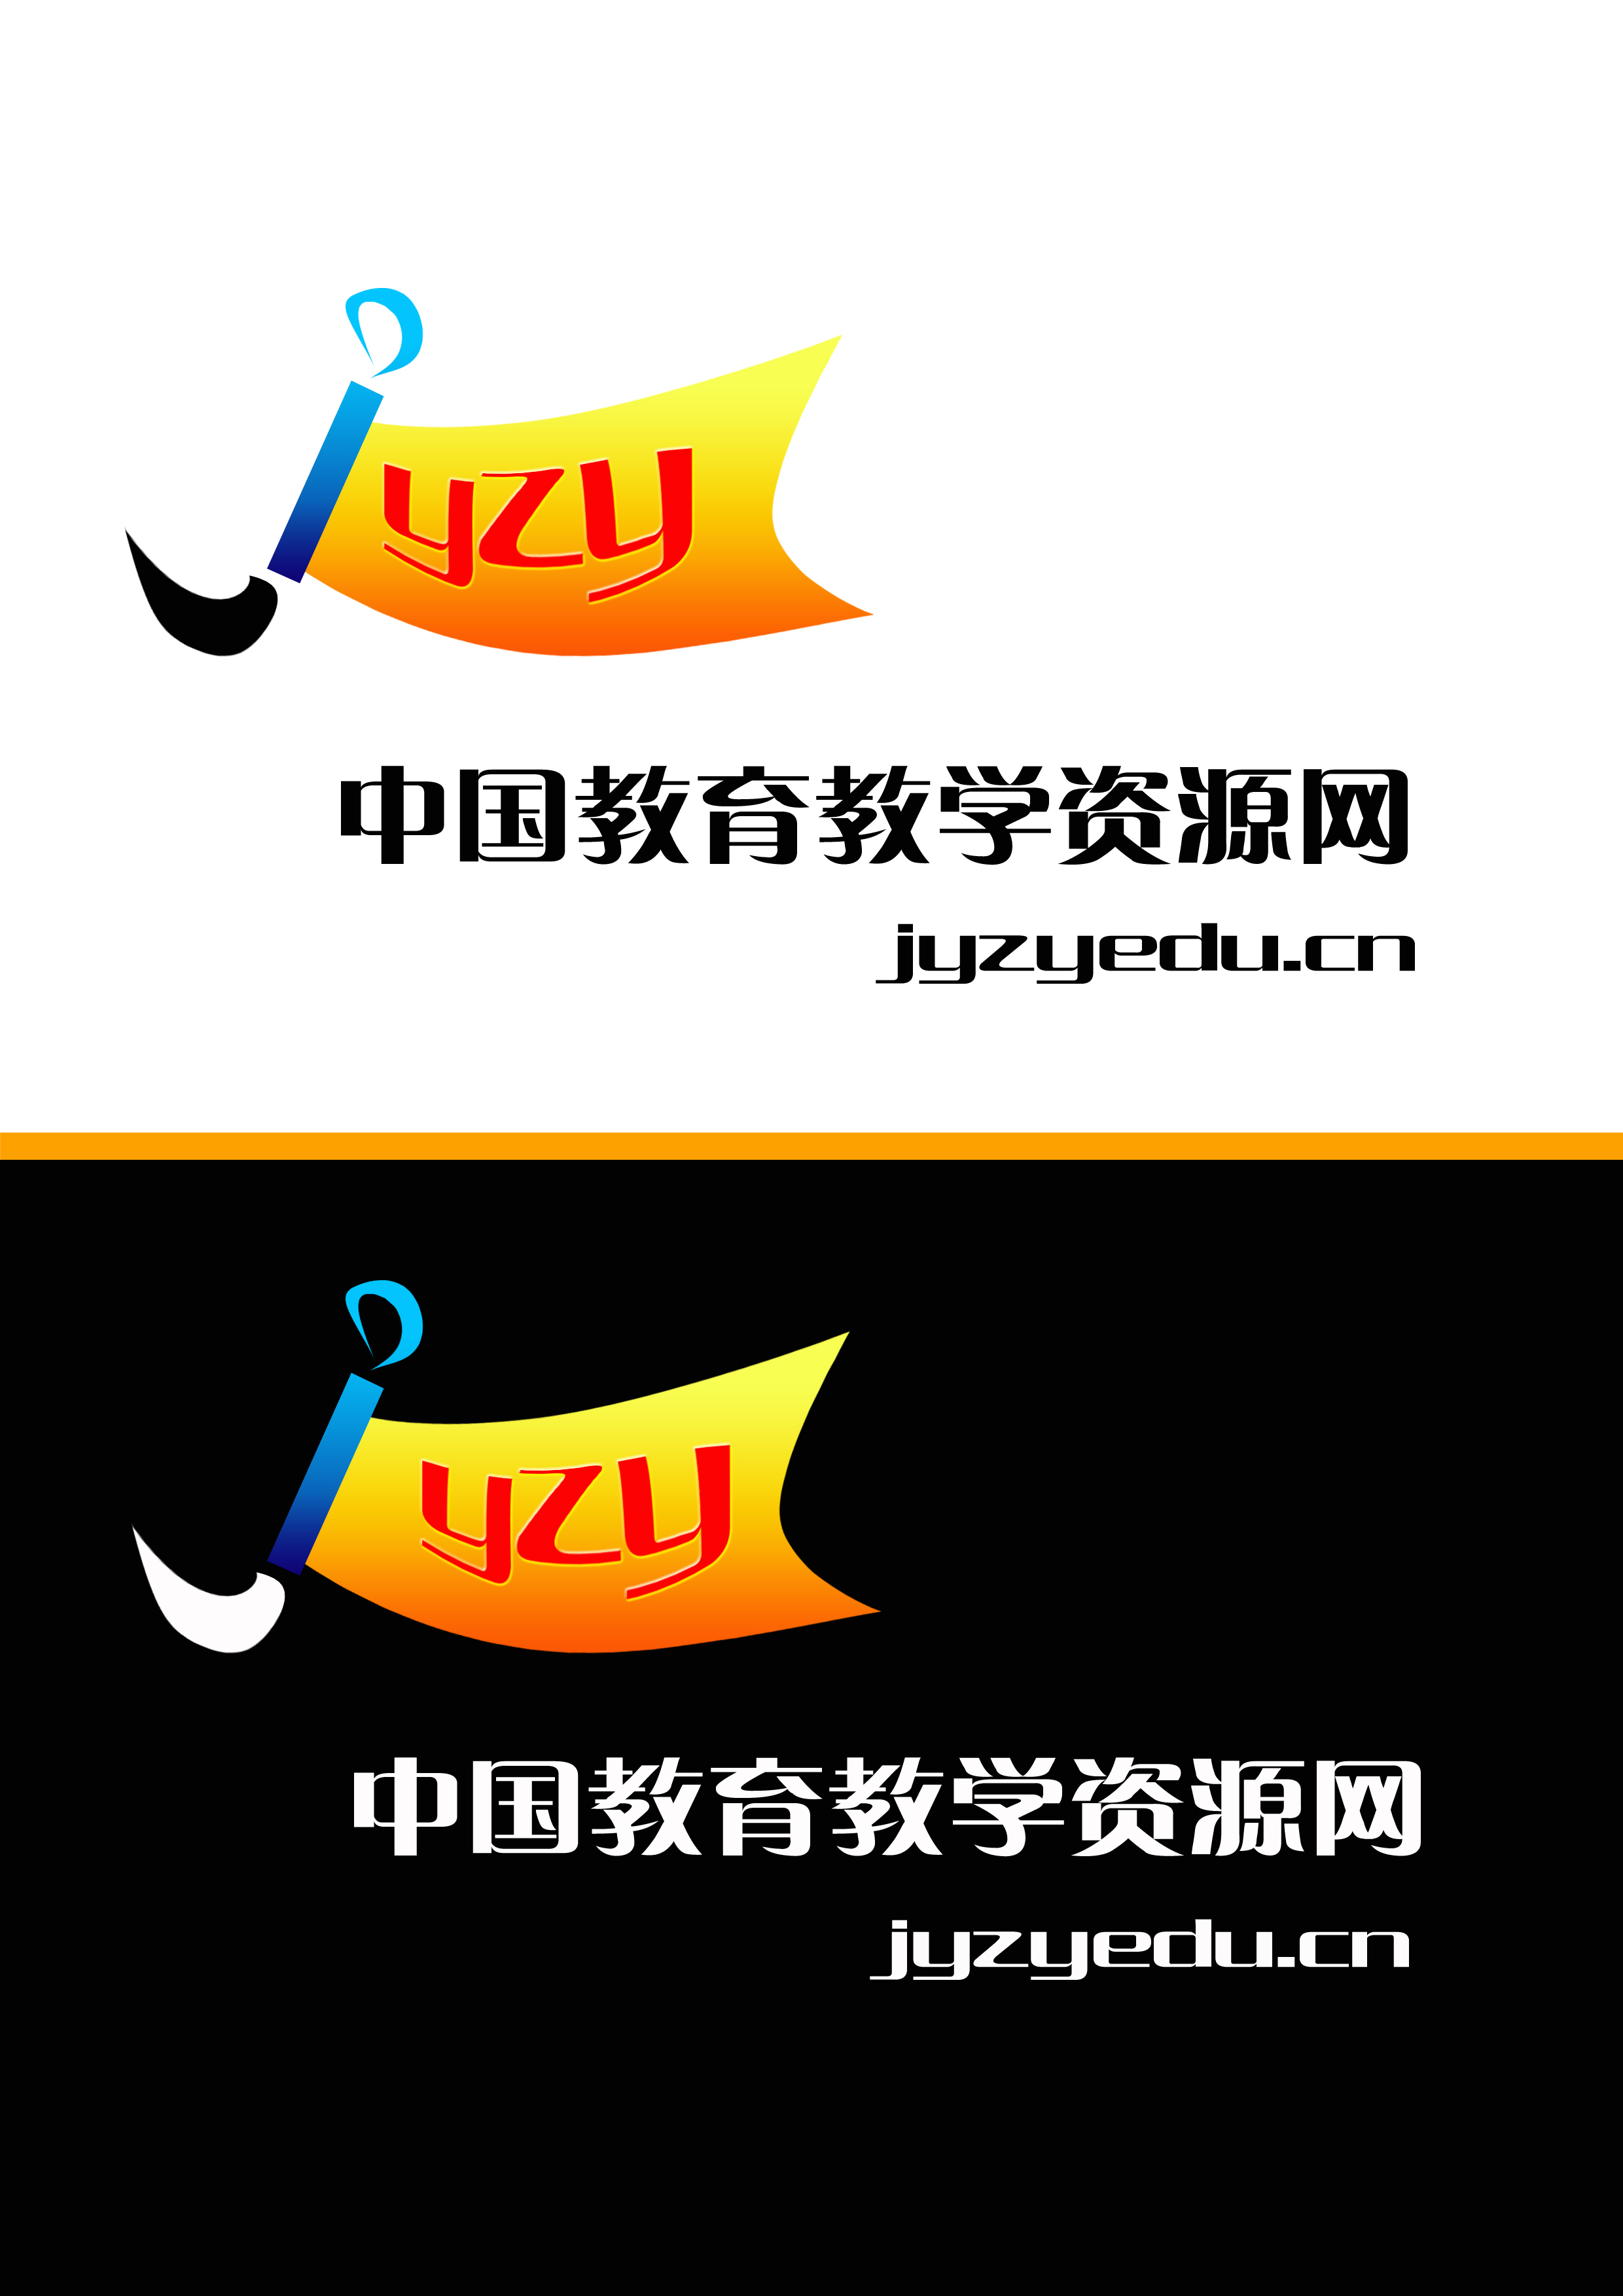 教育网站logo设计第26541331号稿件